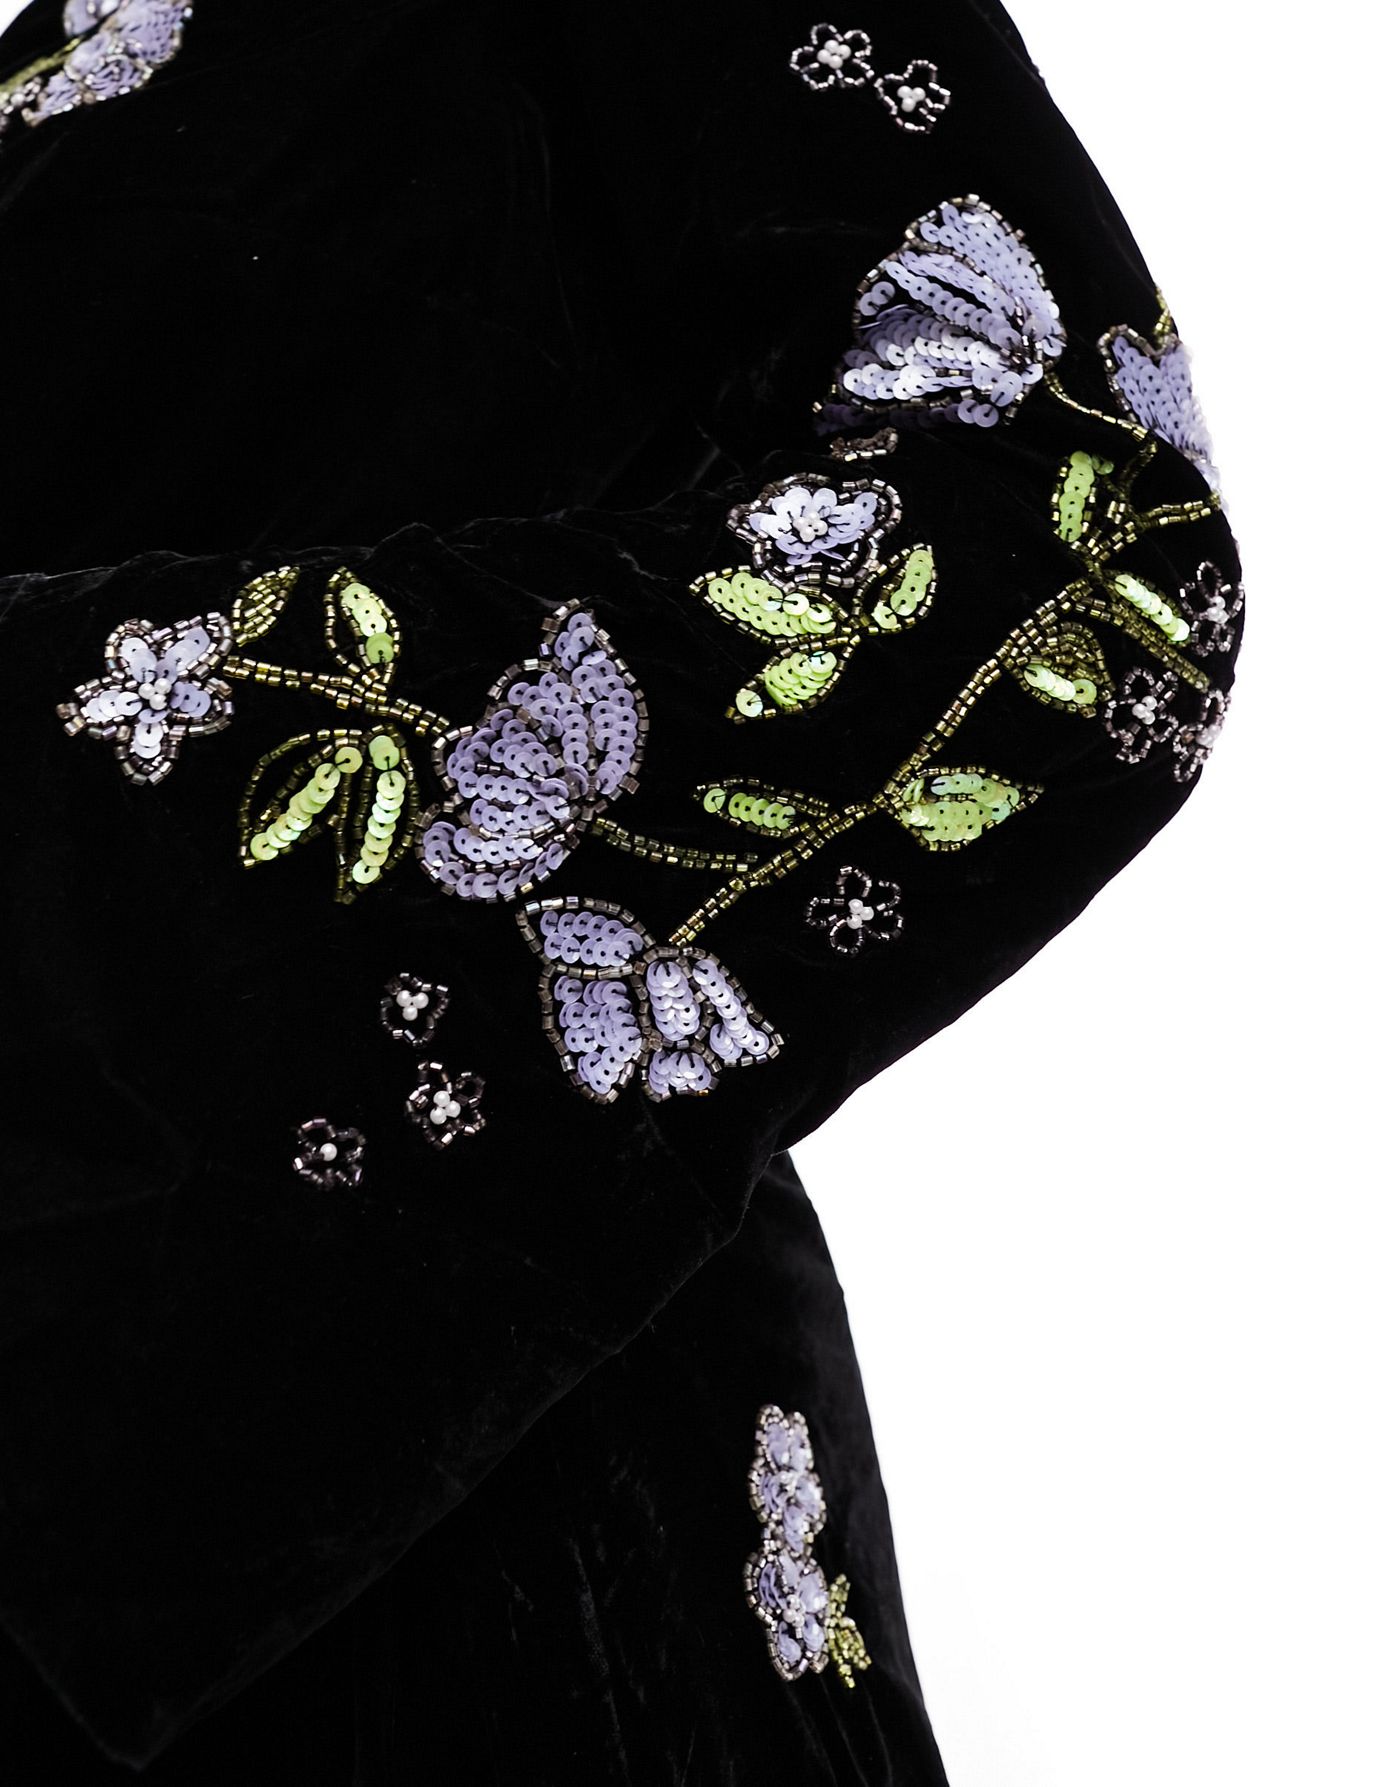 ASOS DESIGN Curve velvet wrap midi dress with floral embellished detail in black